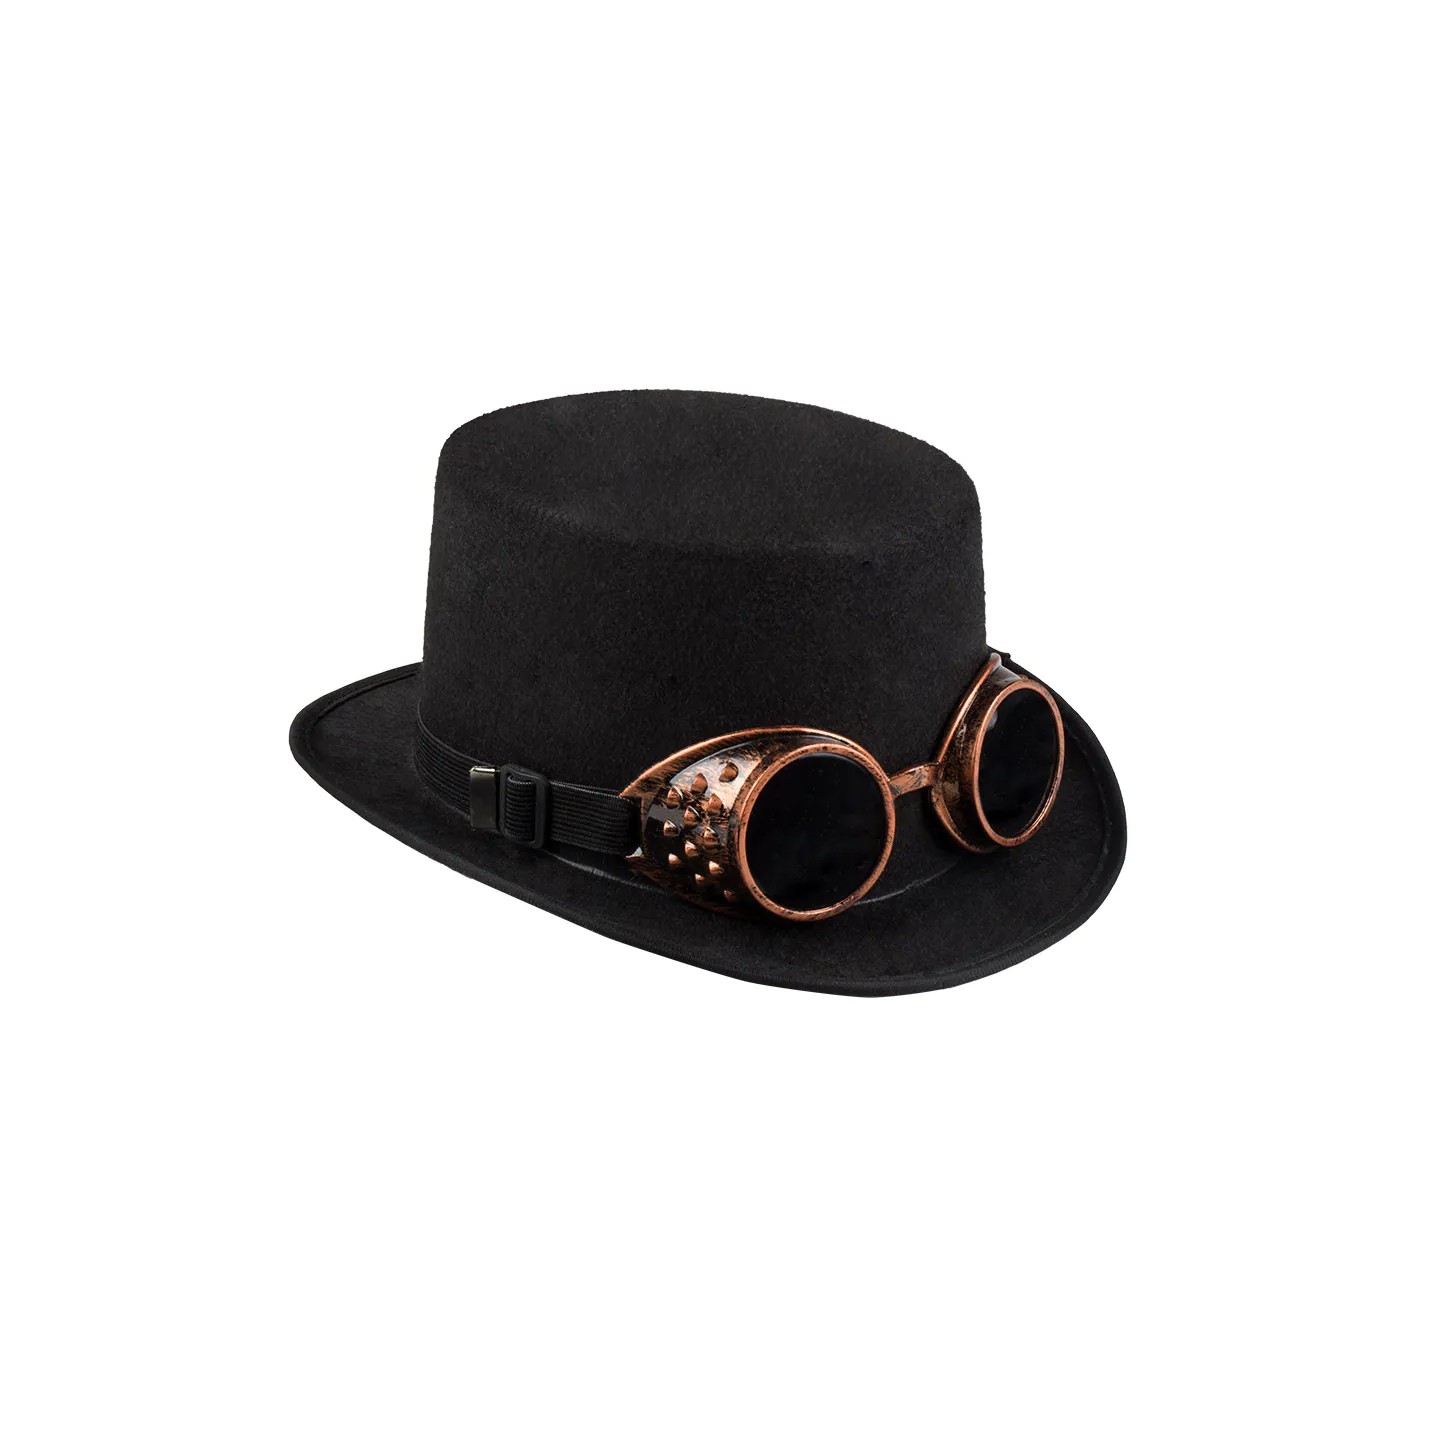 steampunk hoed met bril